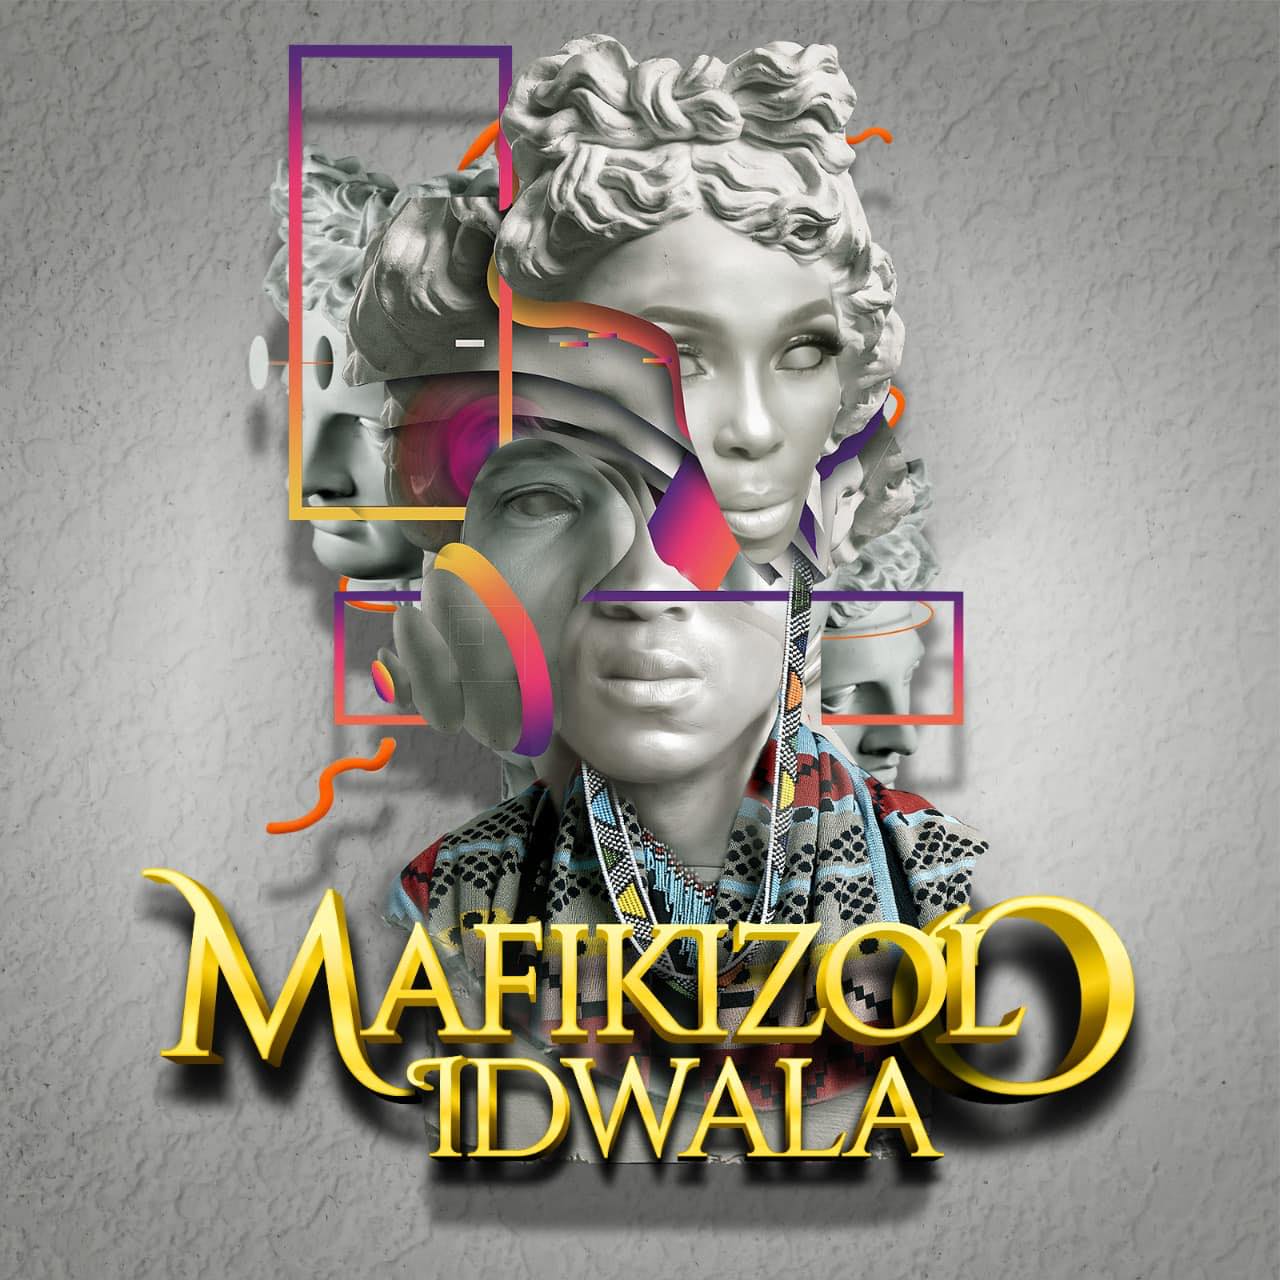 Mafikizolo – Ngiyaz’Fela